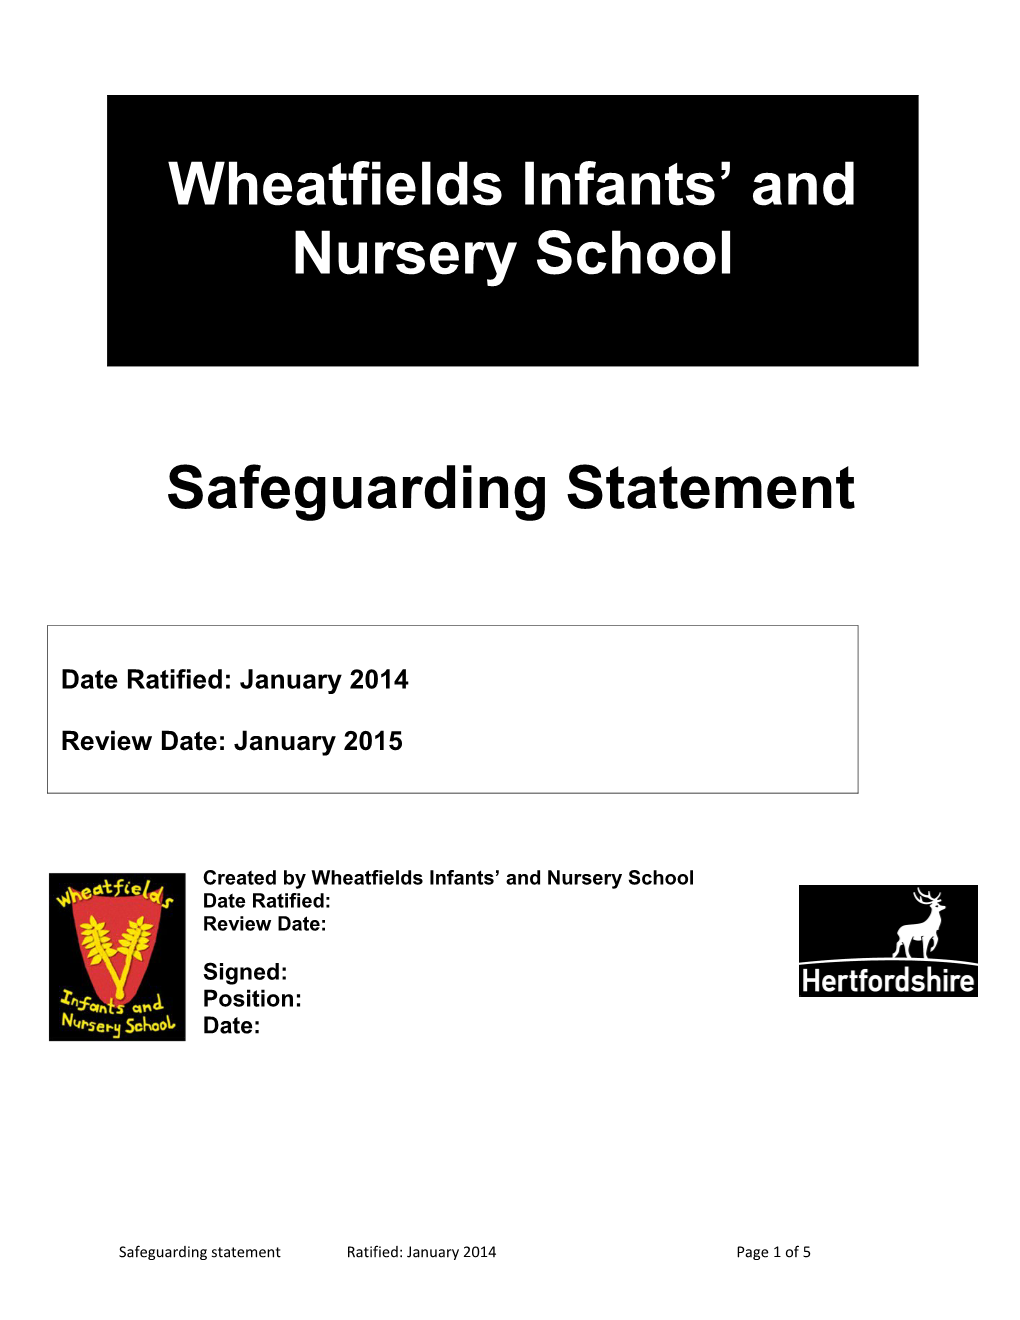 Wheatfields Junior School Safeguarding Statement